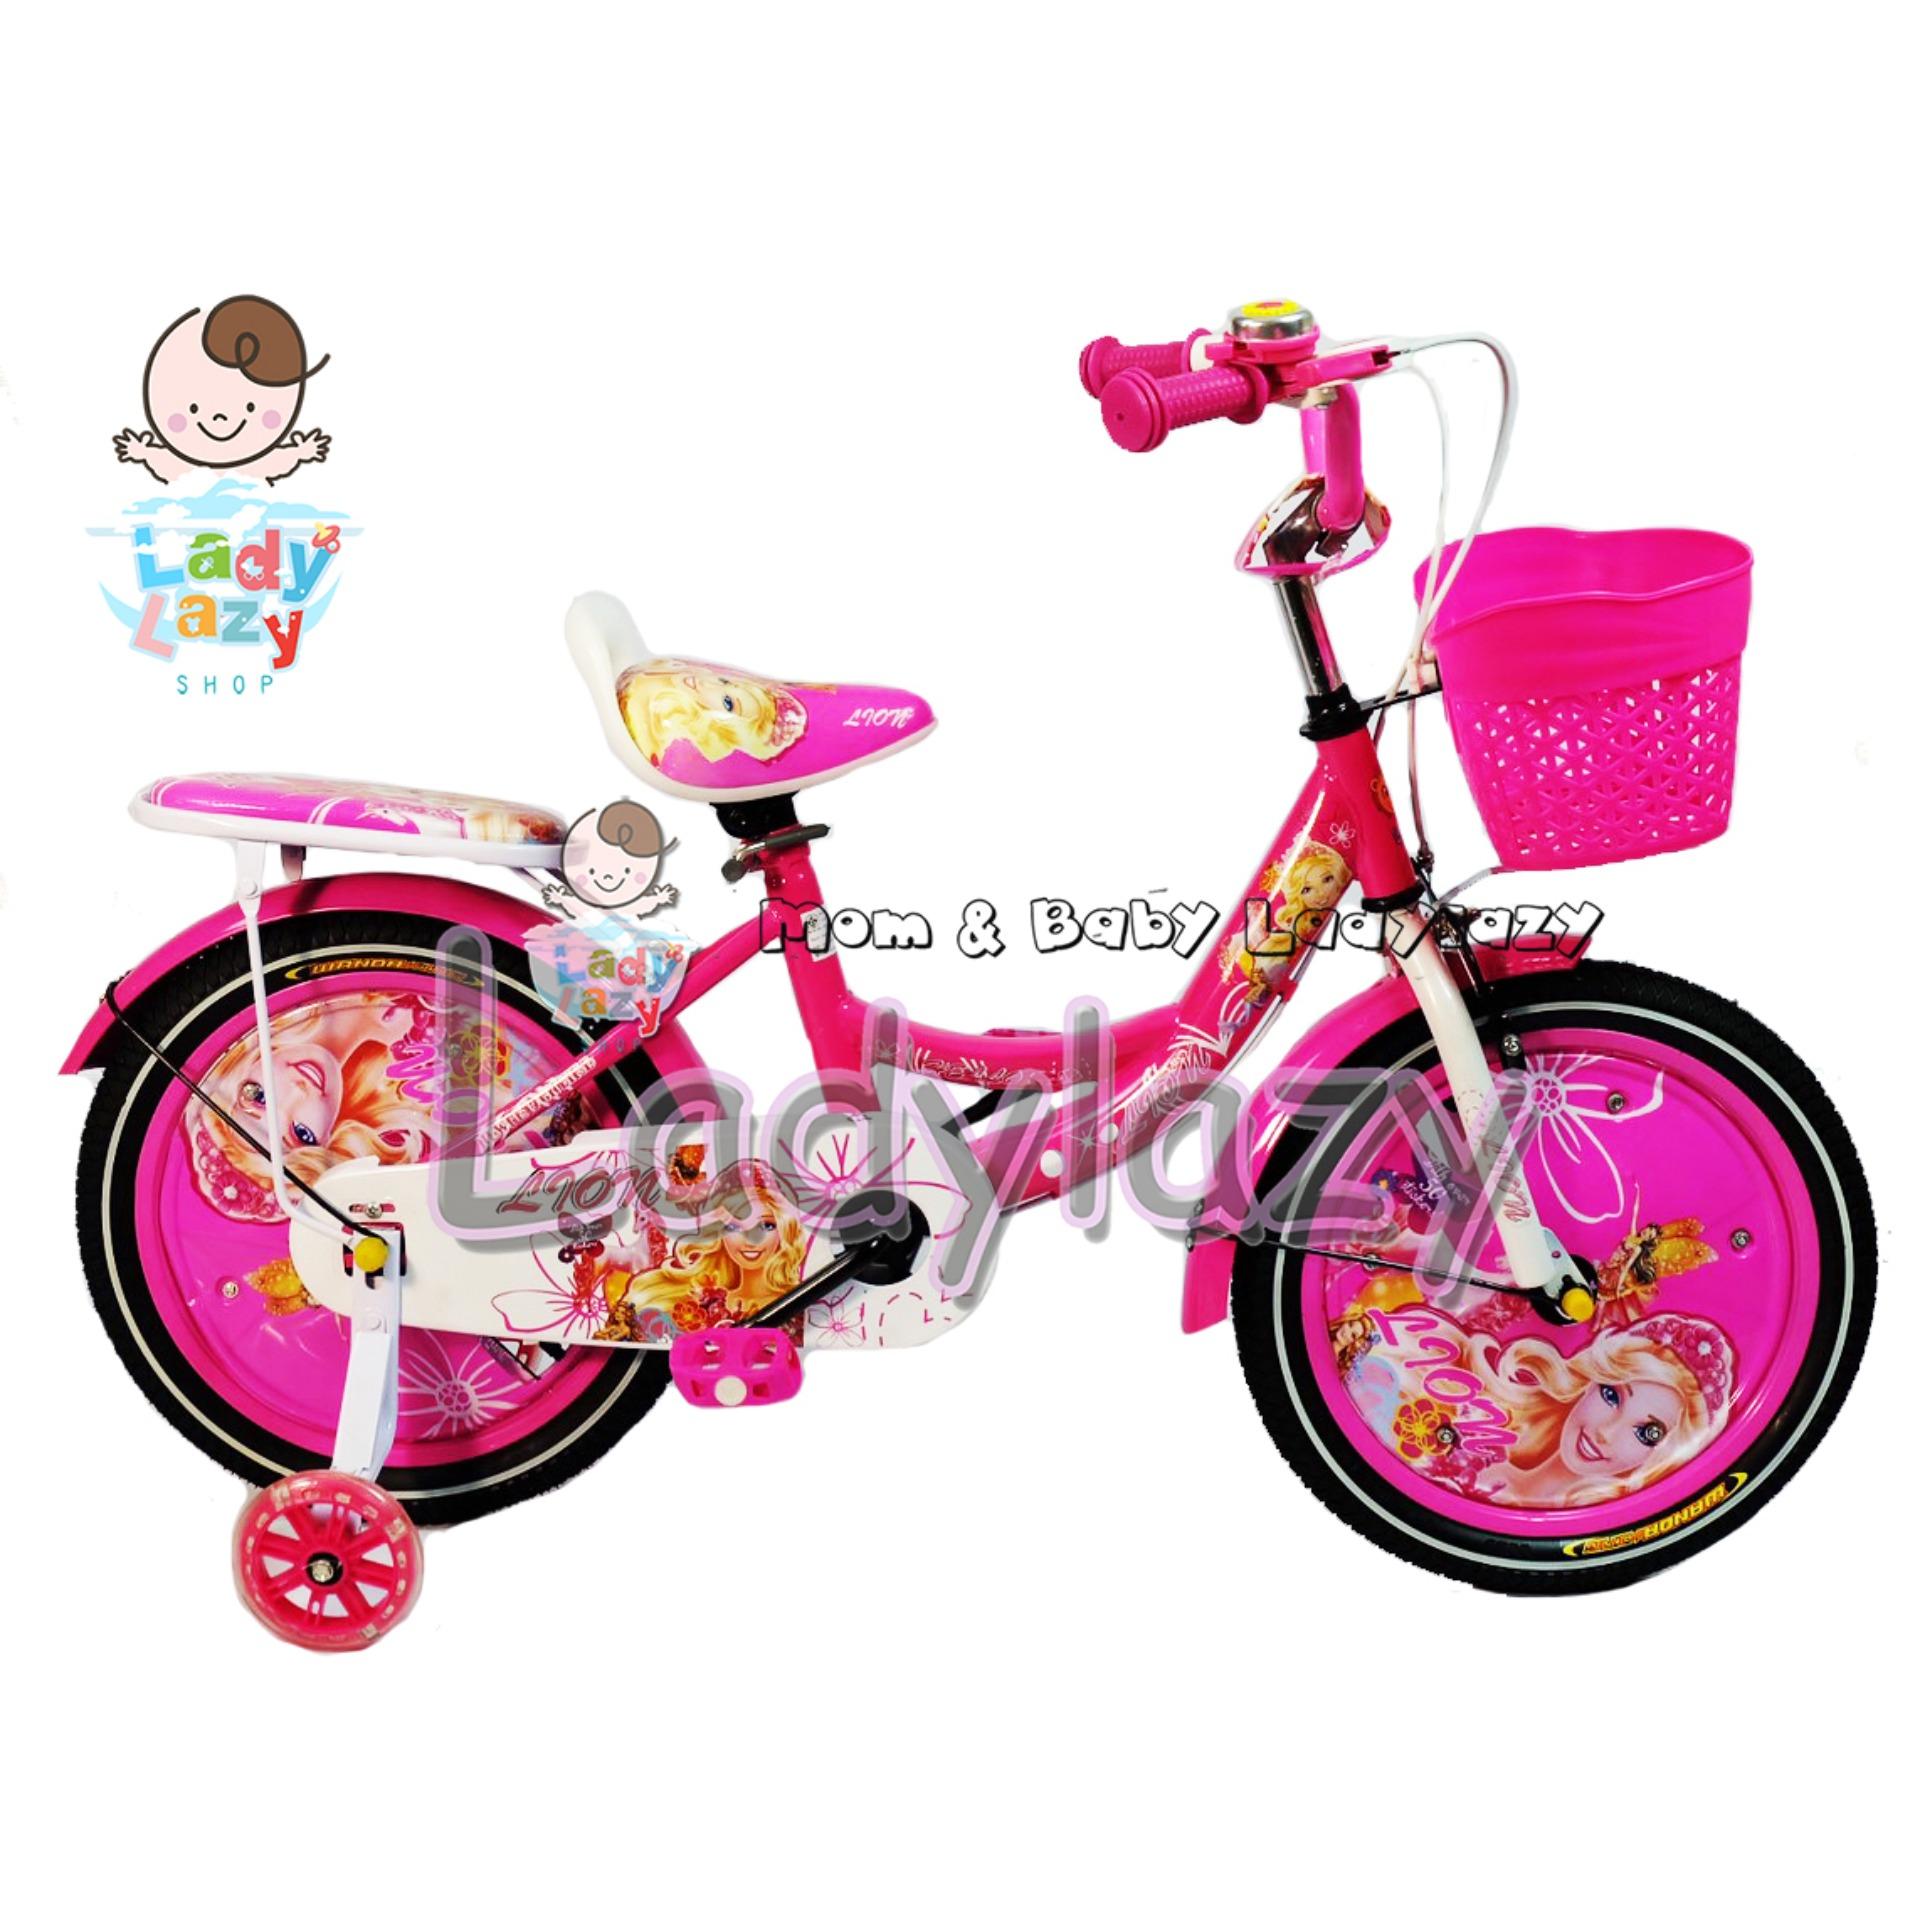 ladylazyจักรยานเด็ก ลายเจ้าหญิงน้อยน่ารัก No.5555 16" สีชมพูเข้ม